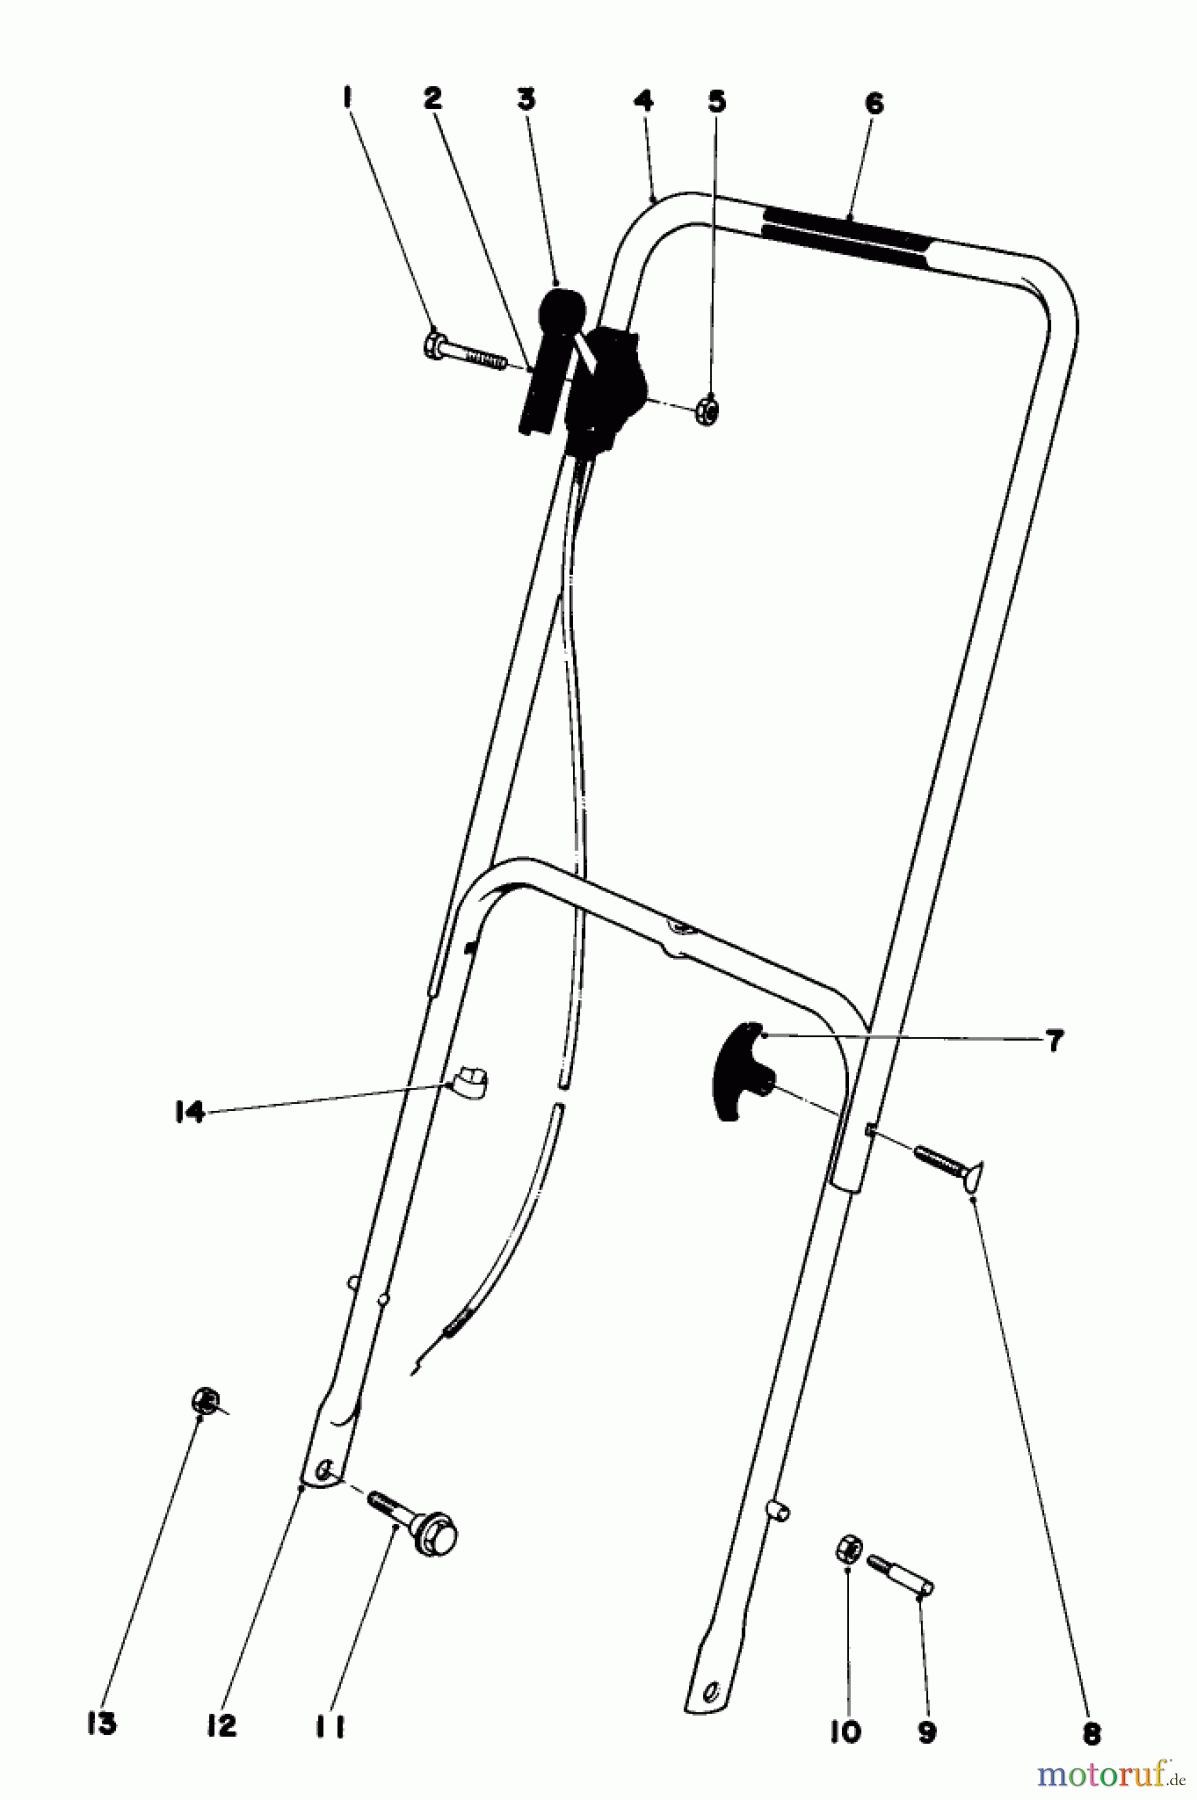  Toro Neu Mowers, Walk-Behind Seite 1 16390 - Toro Whirlwind PowR, 1979 (9000001-9999999) HANDLE ASSEMBLY MODEL 16360 AND 16370